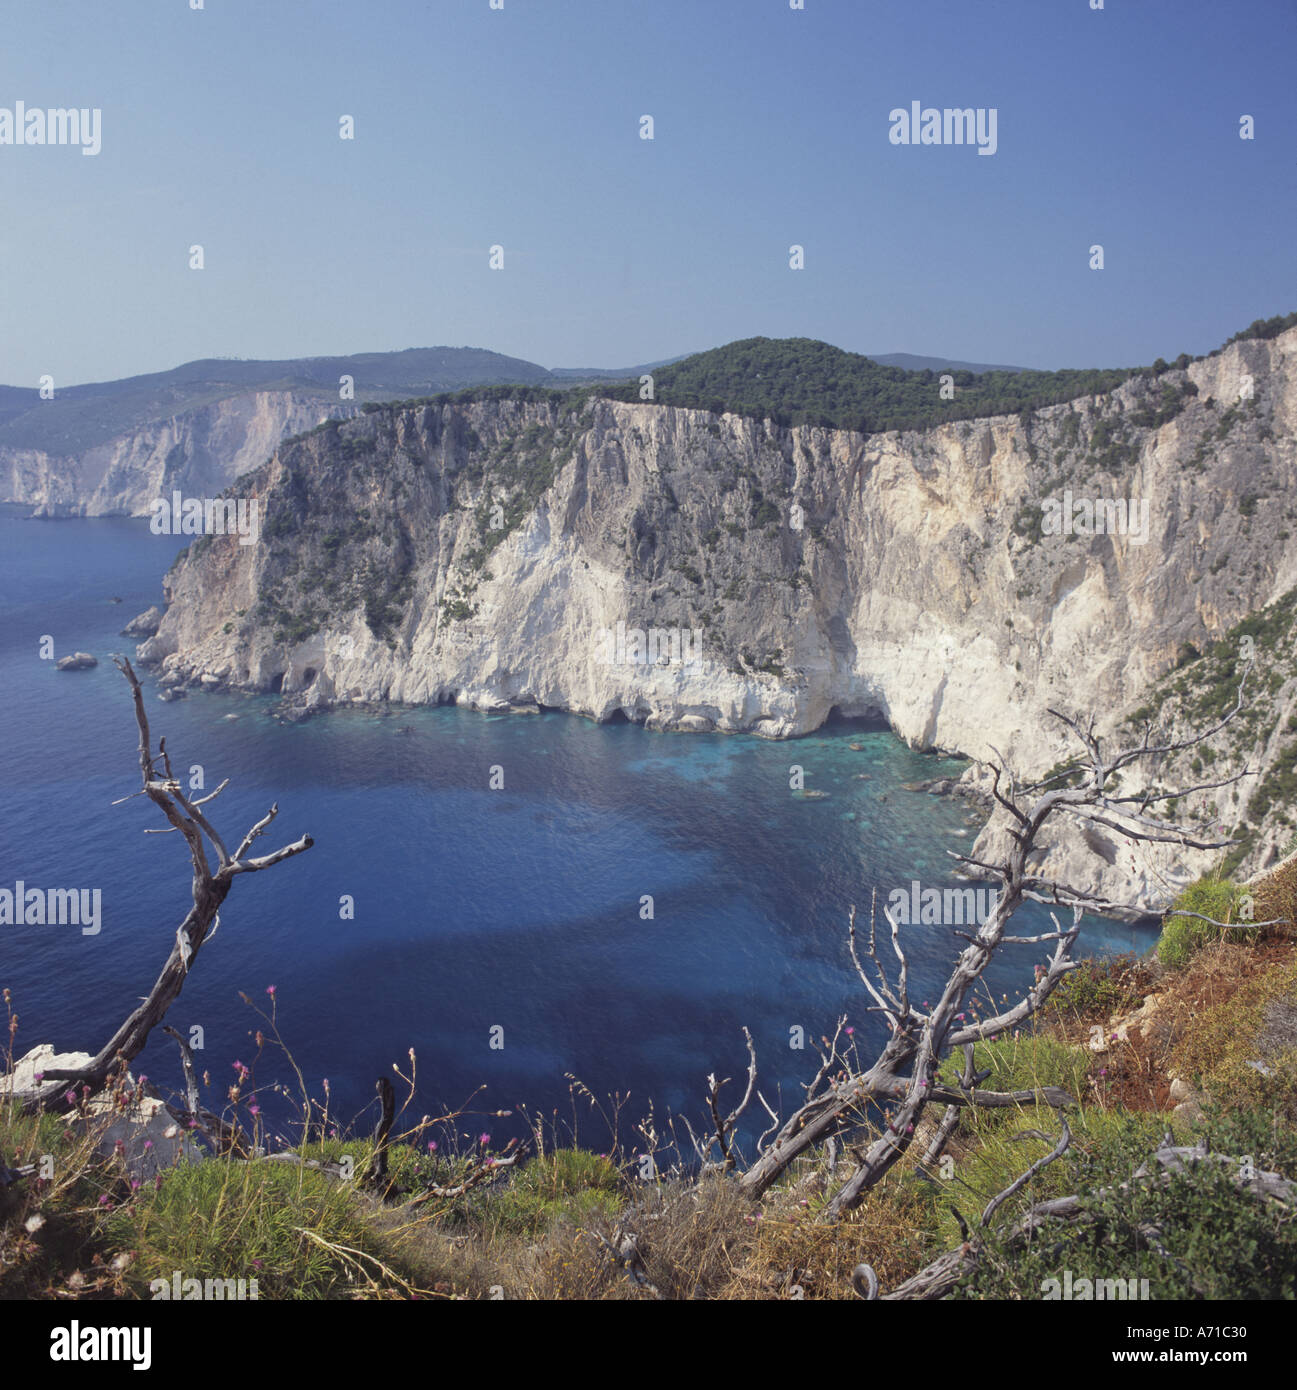 Blick entlang der spektakulären Klippen von Keri an der Westküste der Insel Zakynthos Insel die griechischen Inseln Griechenlands Stockfoto